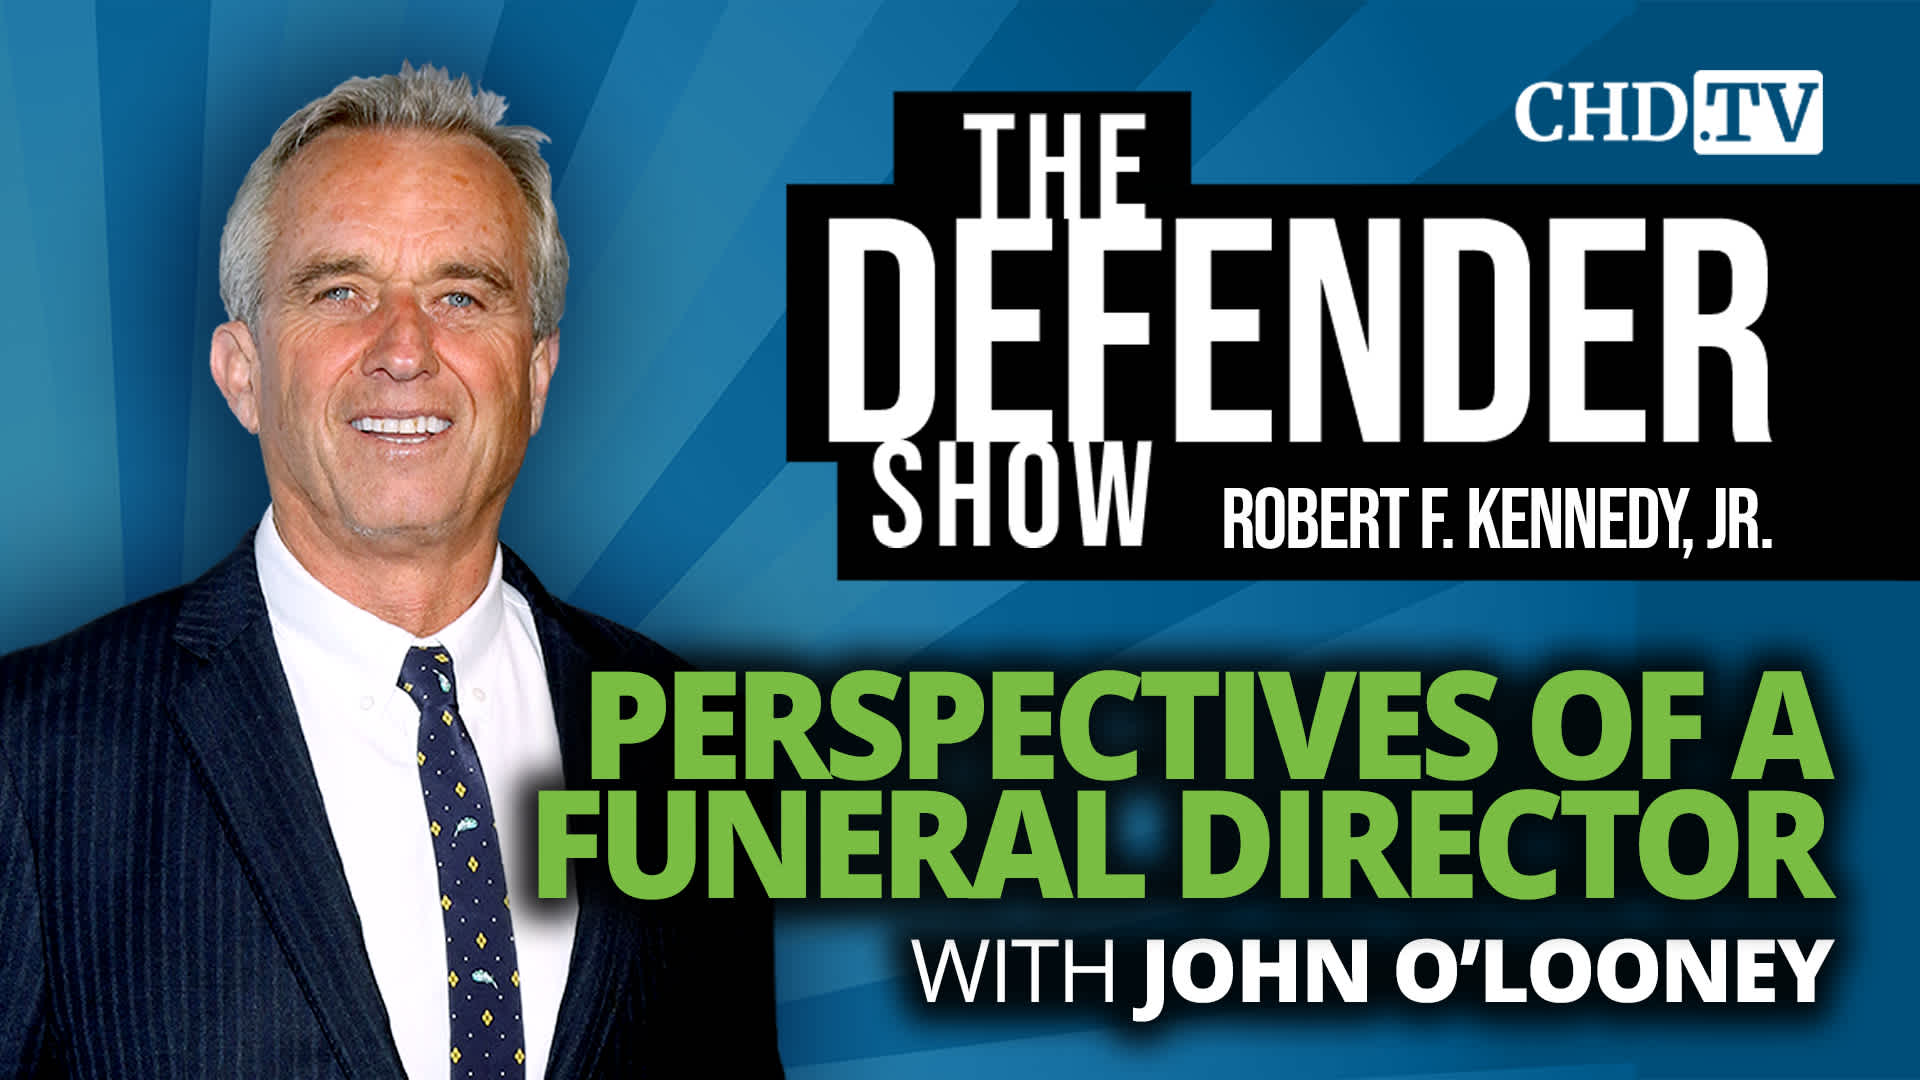 British Funeral Director John O’Looney